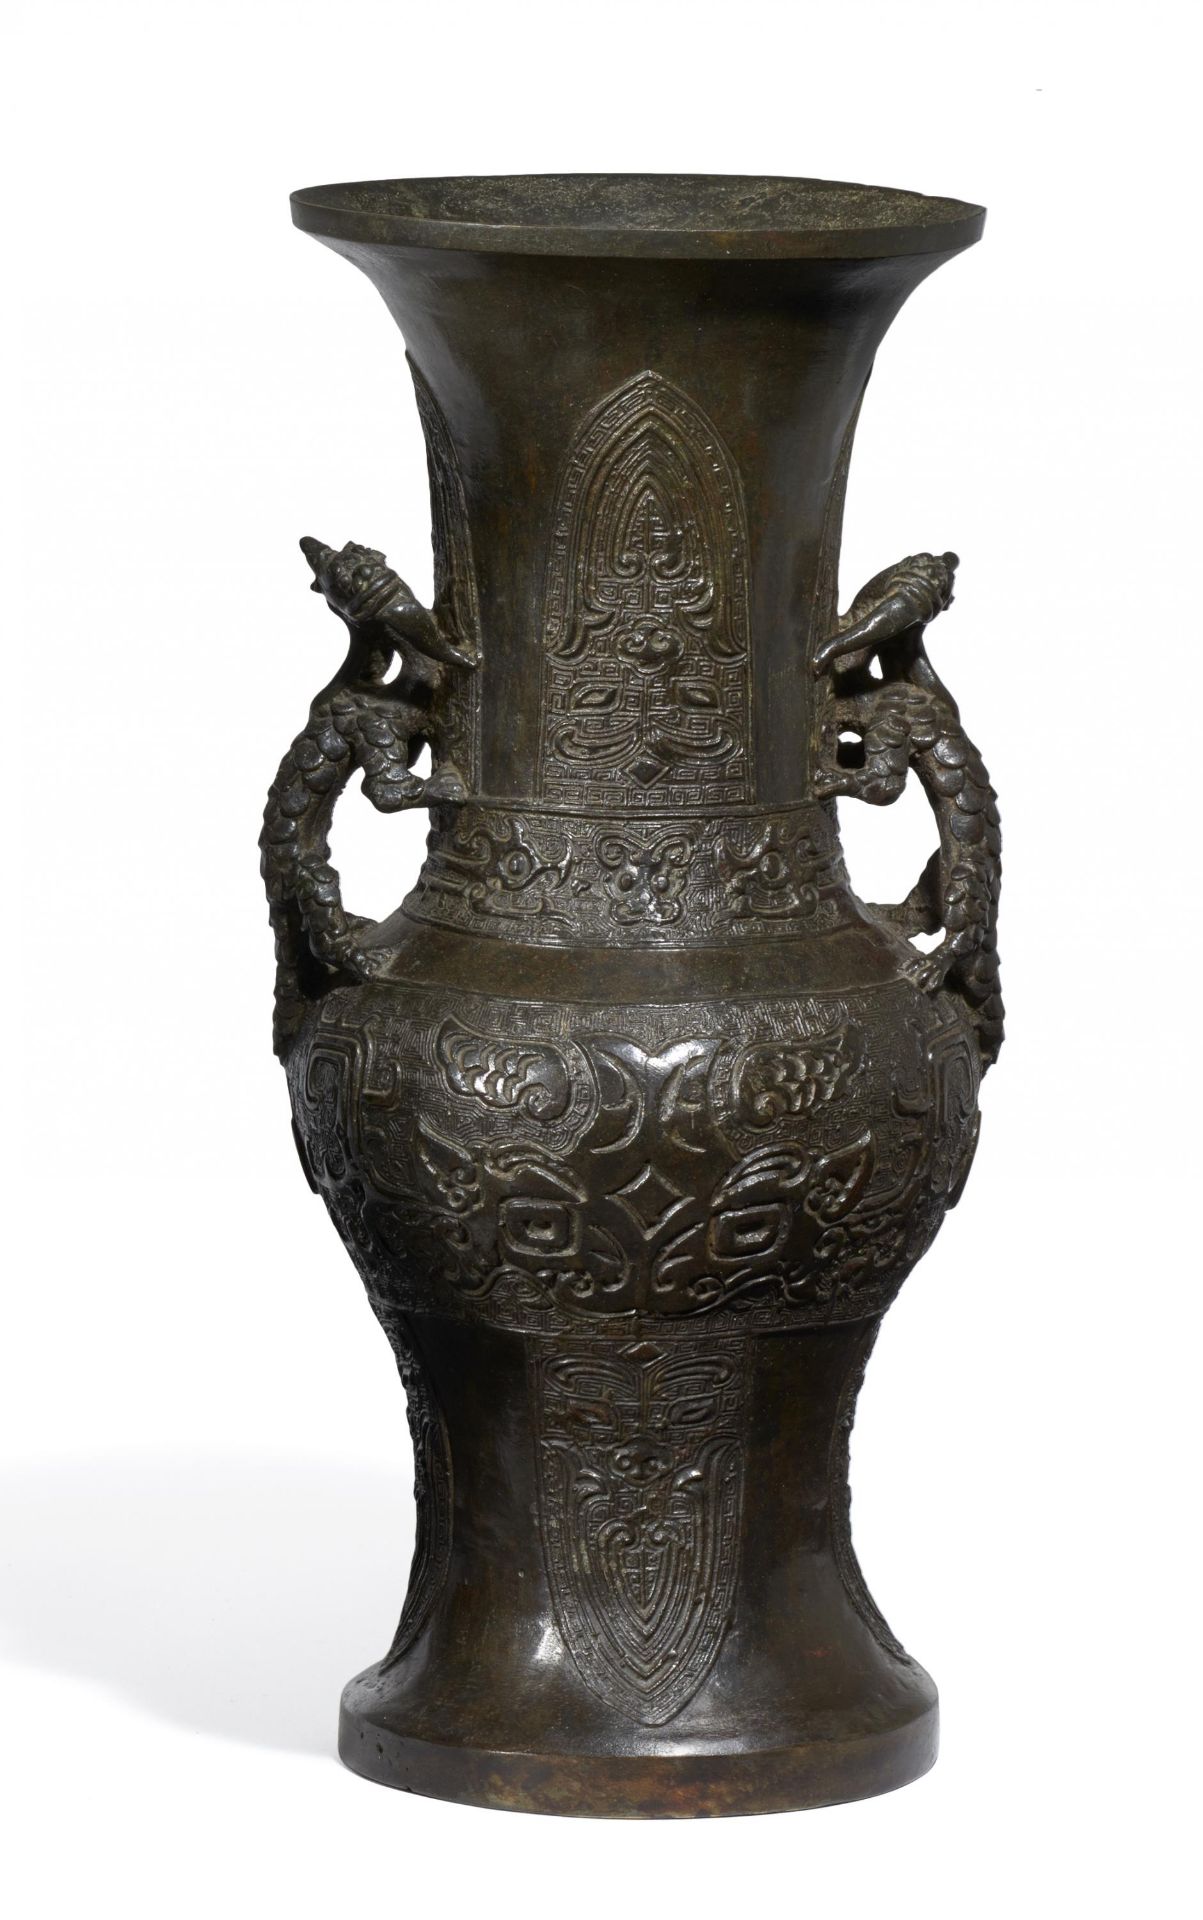 VASE MIT ZWEI DRACHEN. China. Qing-Dynastie. 18. Jh. Bronze mit dunkler Patina. In zun-Form mit